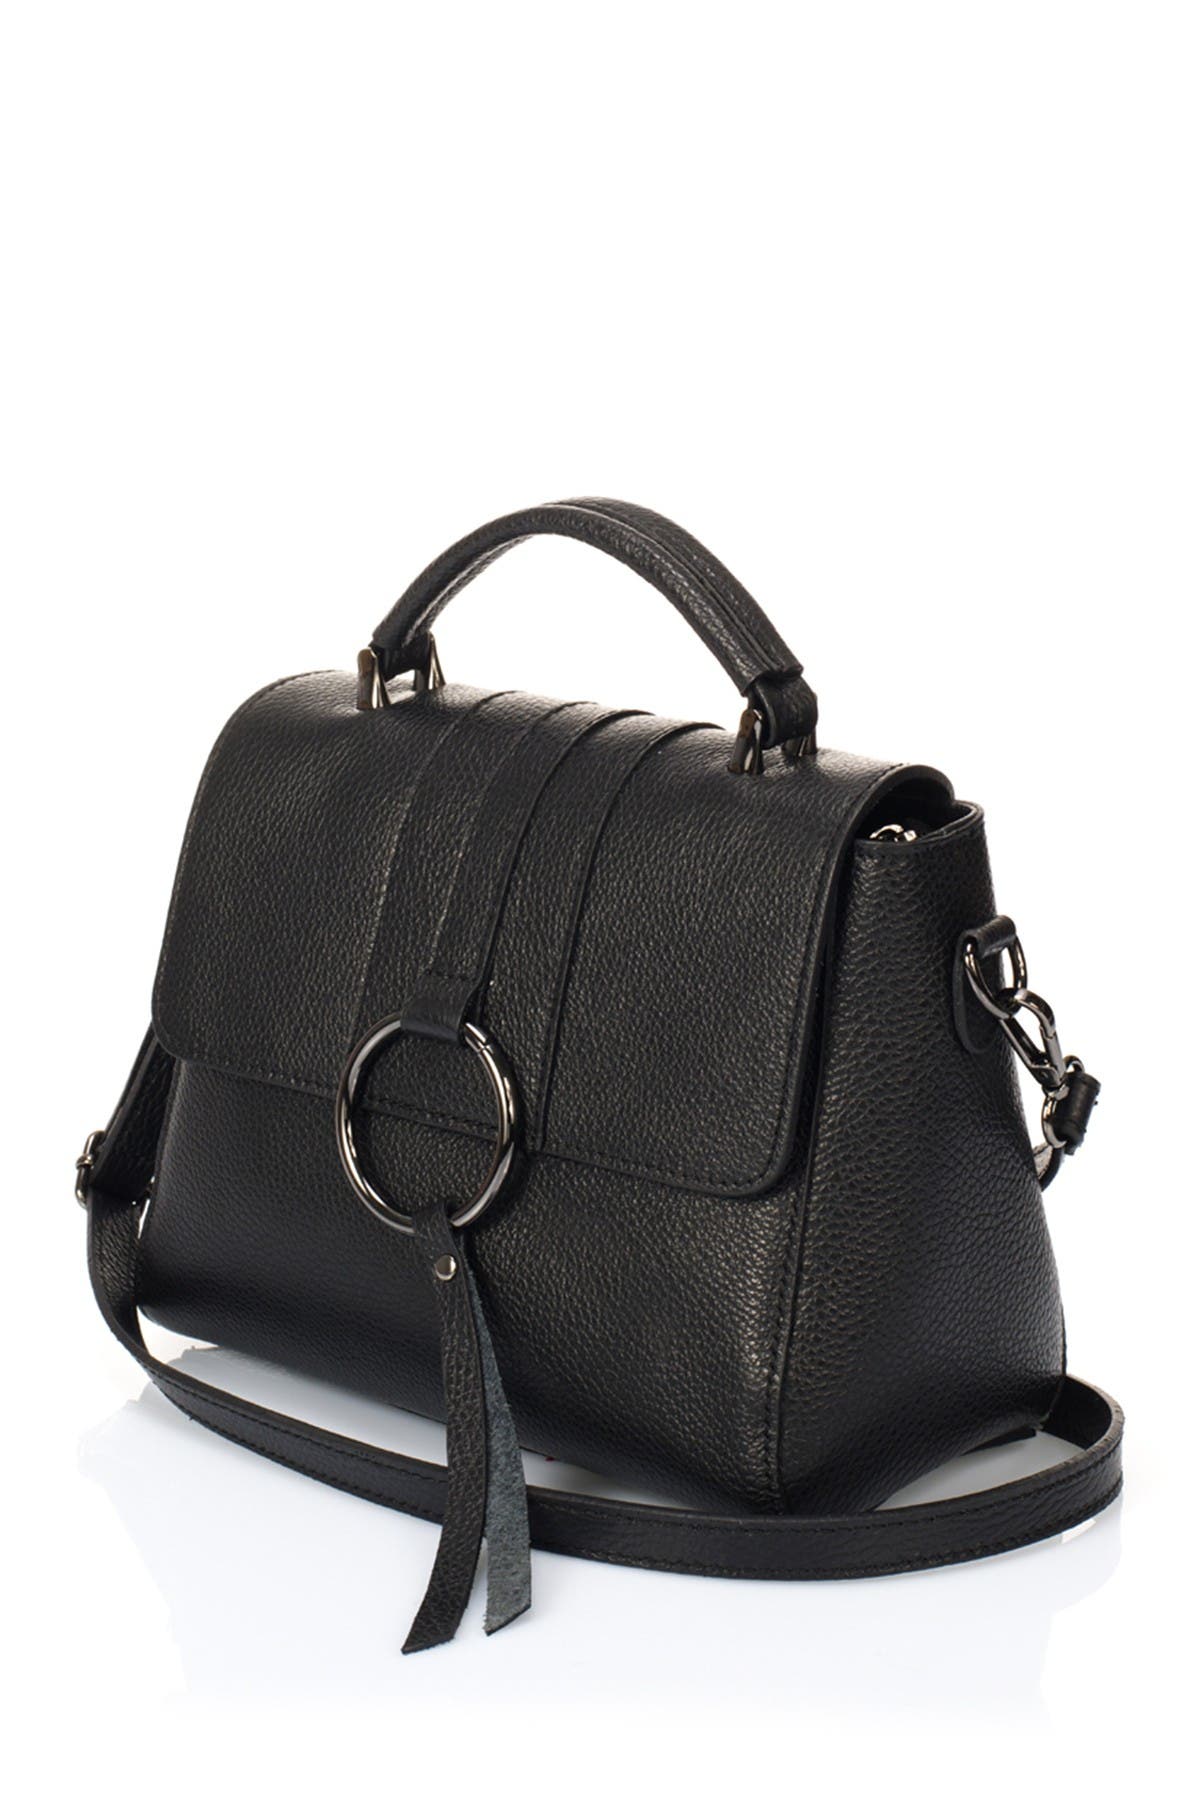 Lisa Minardi | Leather Shoulder Bag | Nordstrom Rack